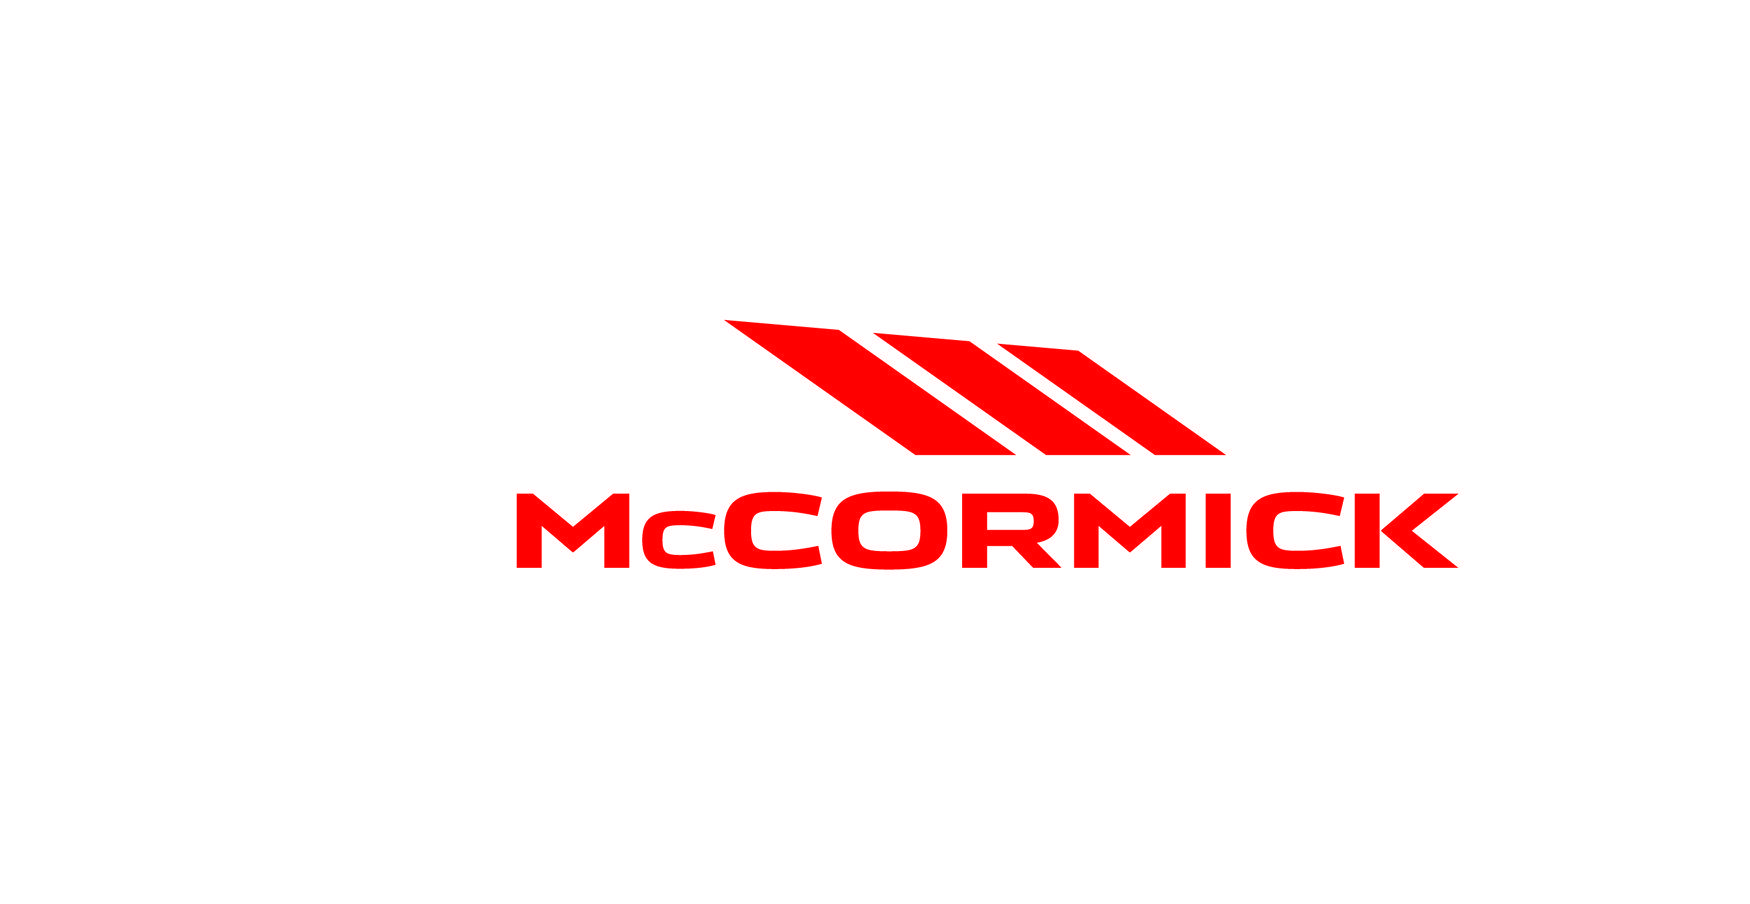 McCormick Logo - McCormick renueva su logo